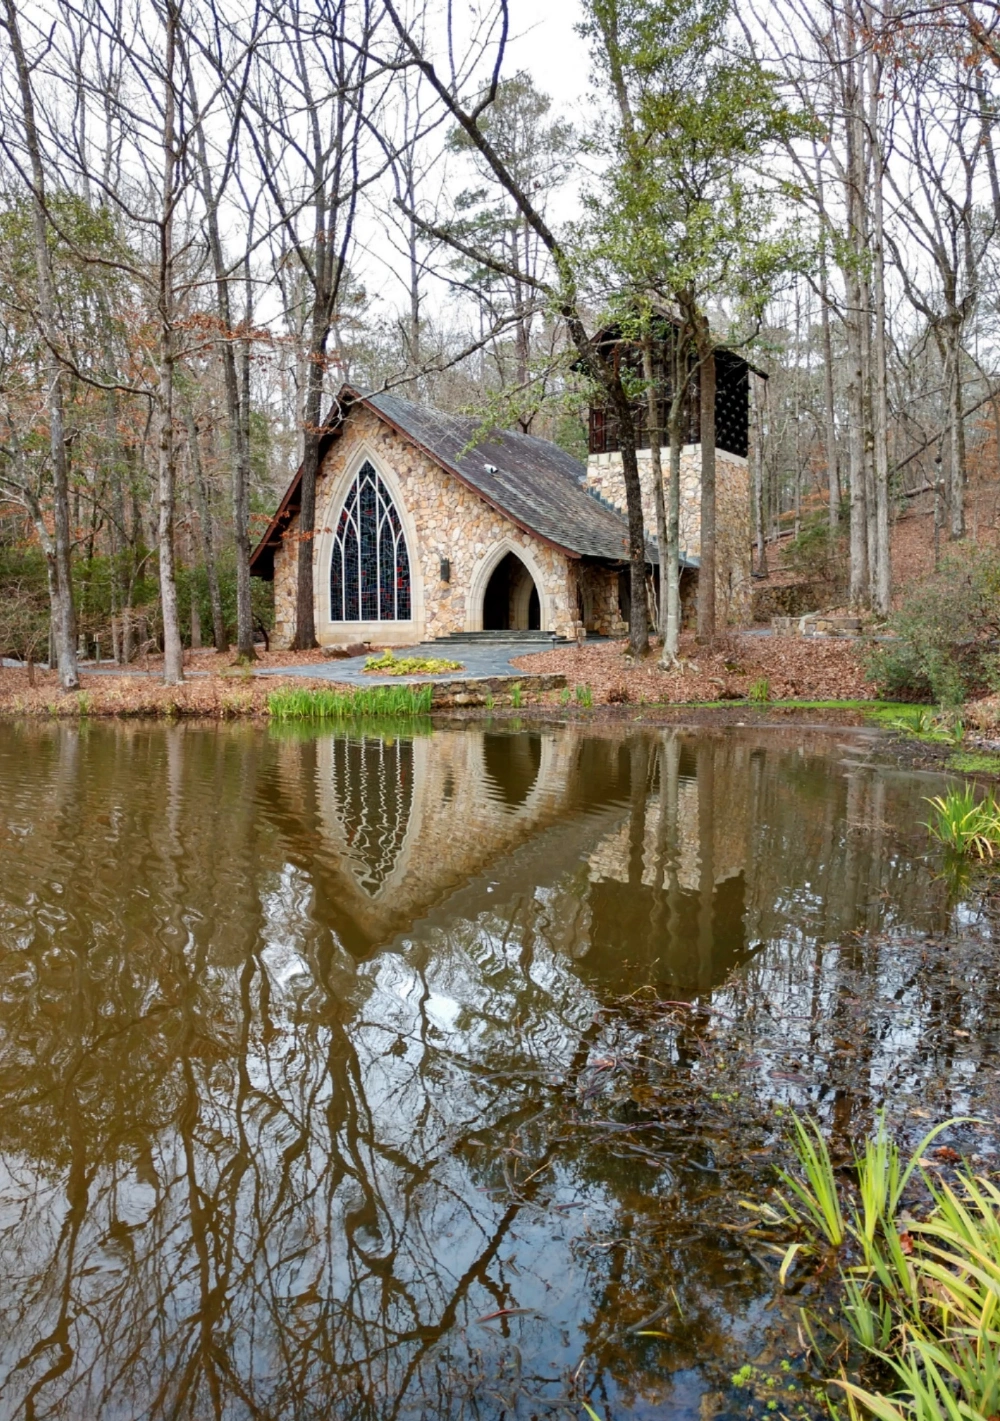  #freetoedit #chapel #lake